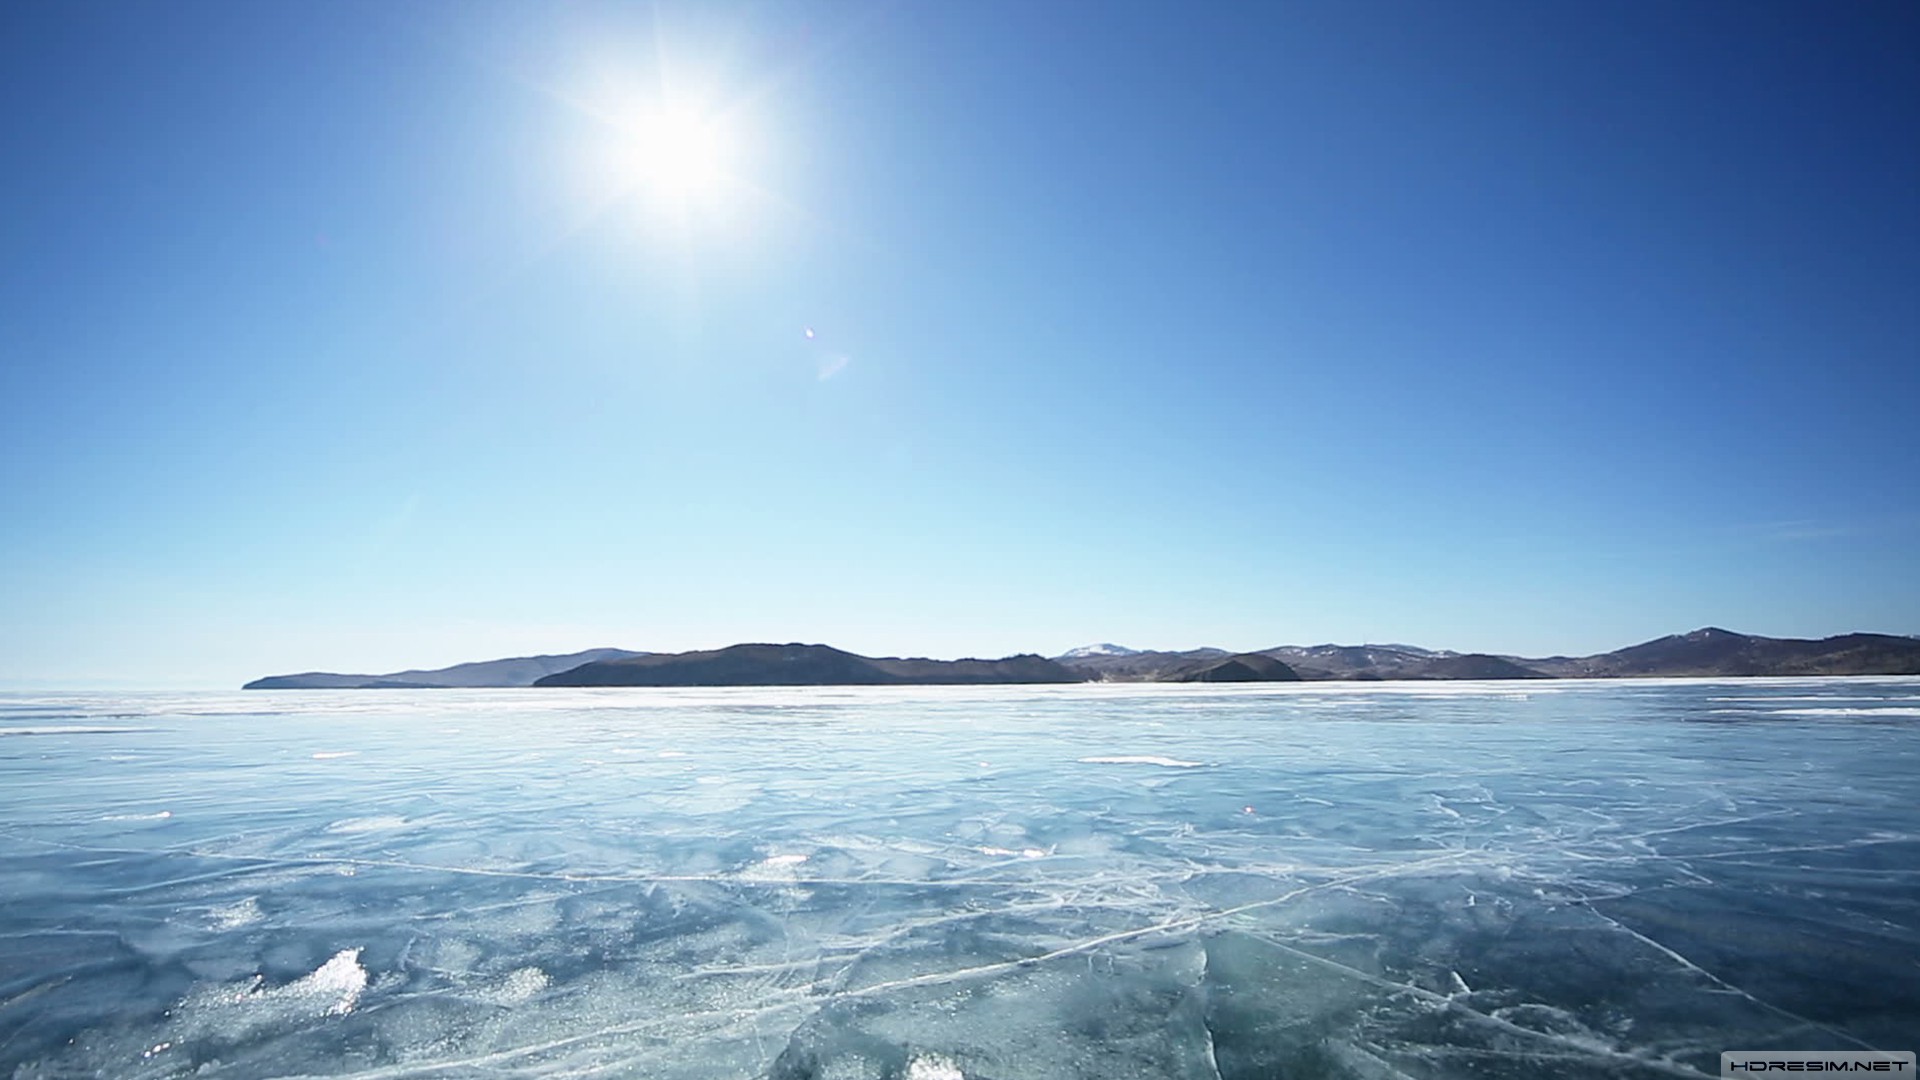 baykal gölü,rusya,buz,güneş,gökyüzü